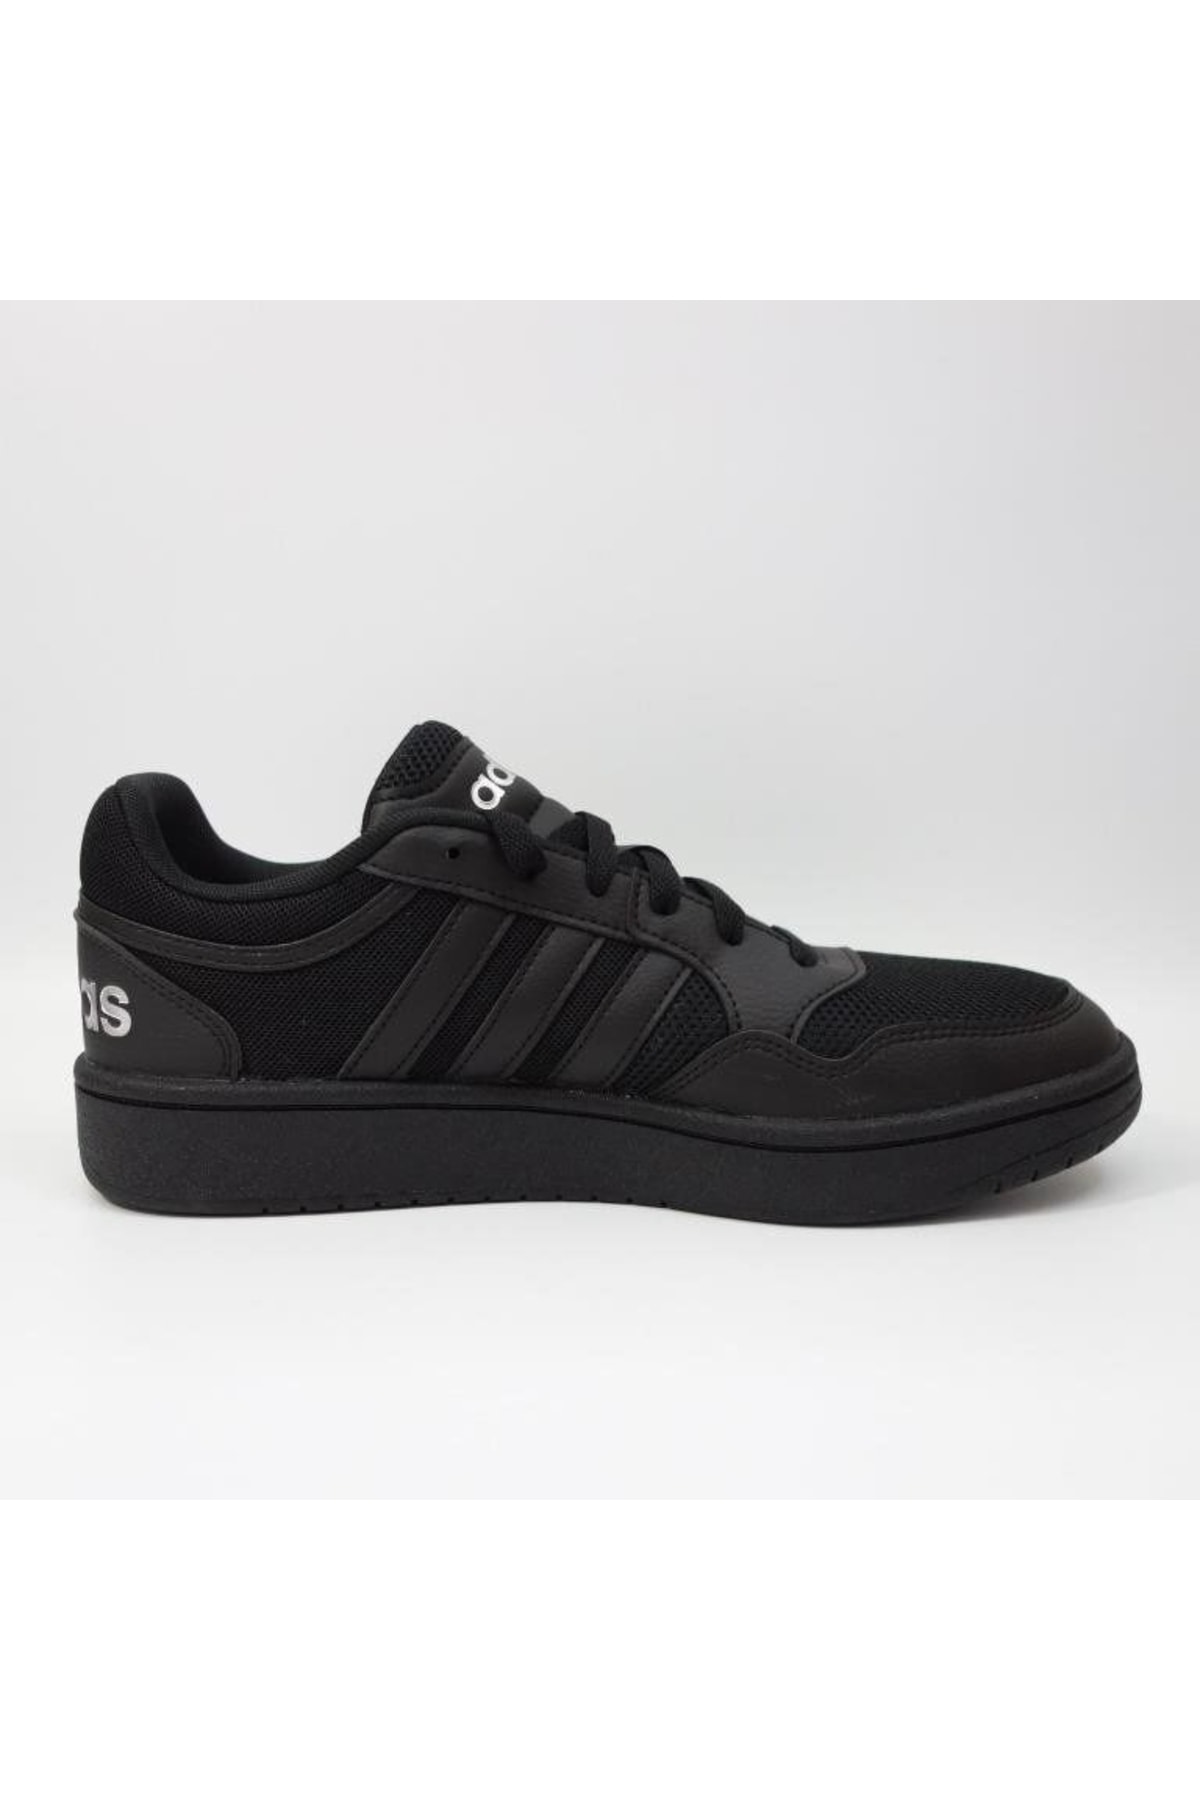 adidas Hoops 3.0 Erkek Günlük Spor Ayakkabı Siyah Gy4748 ZN8771